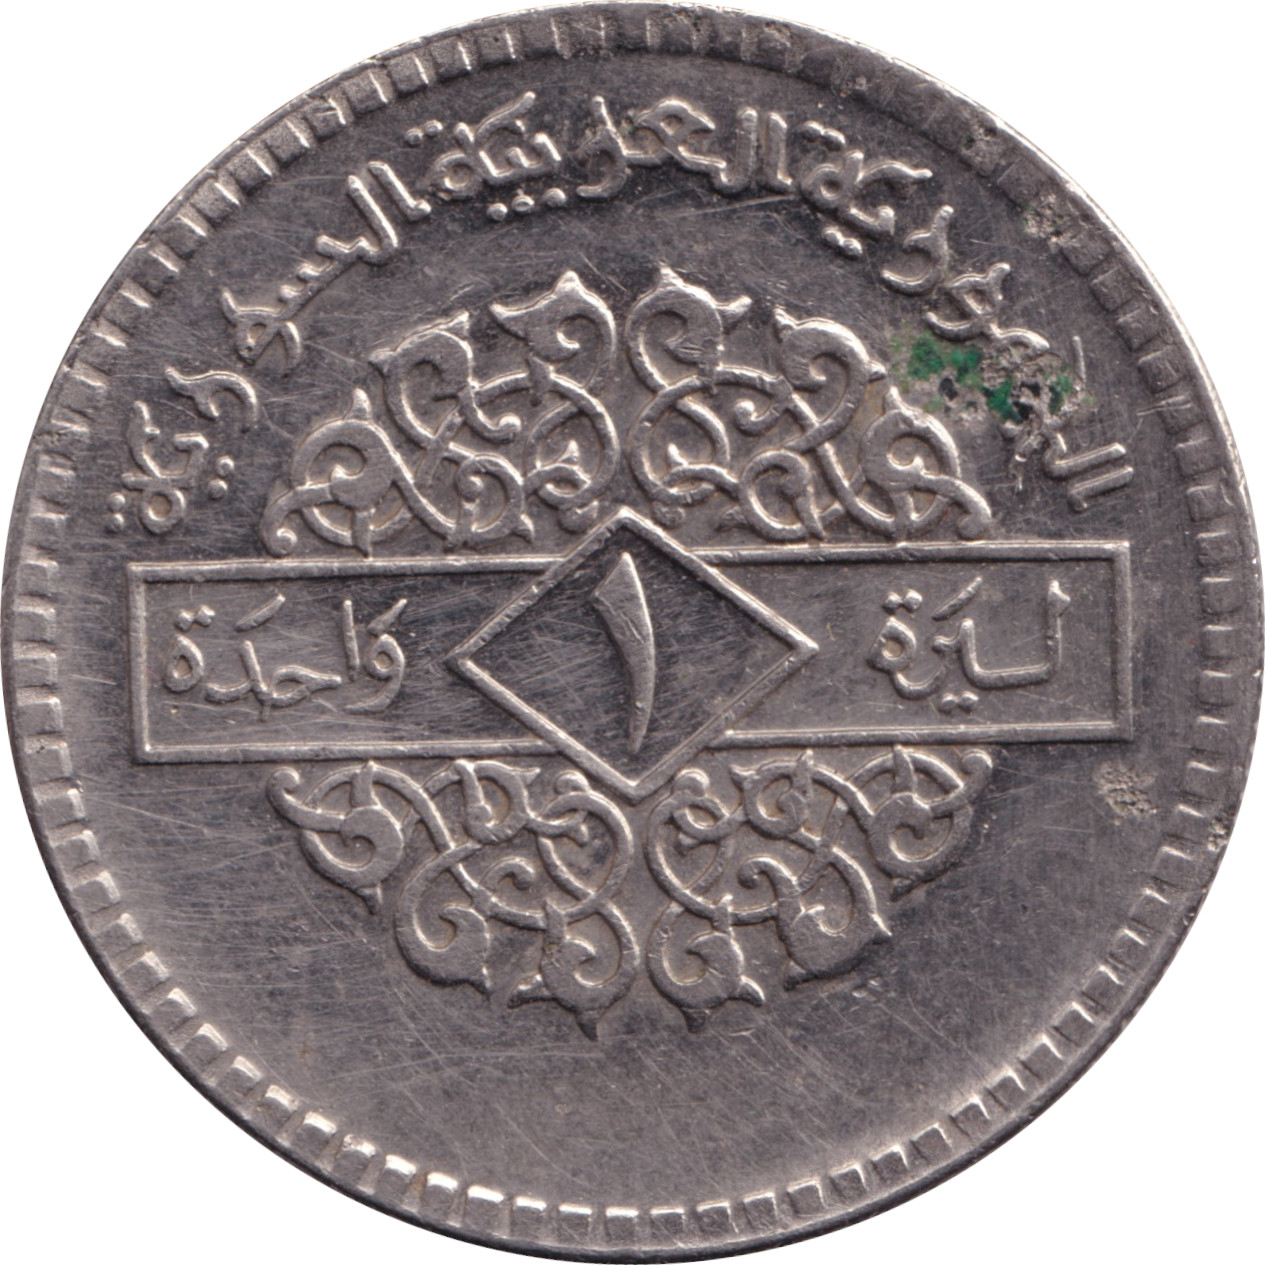 1 pound - République arabe - Type 2